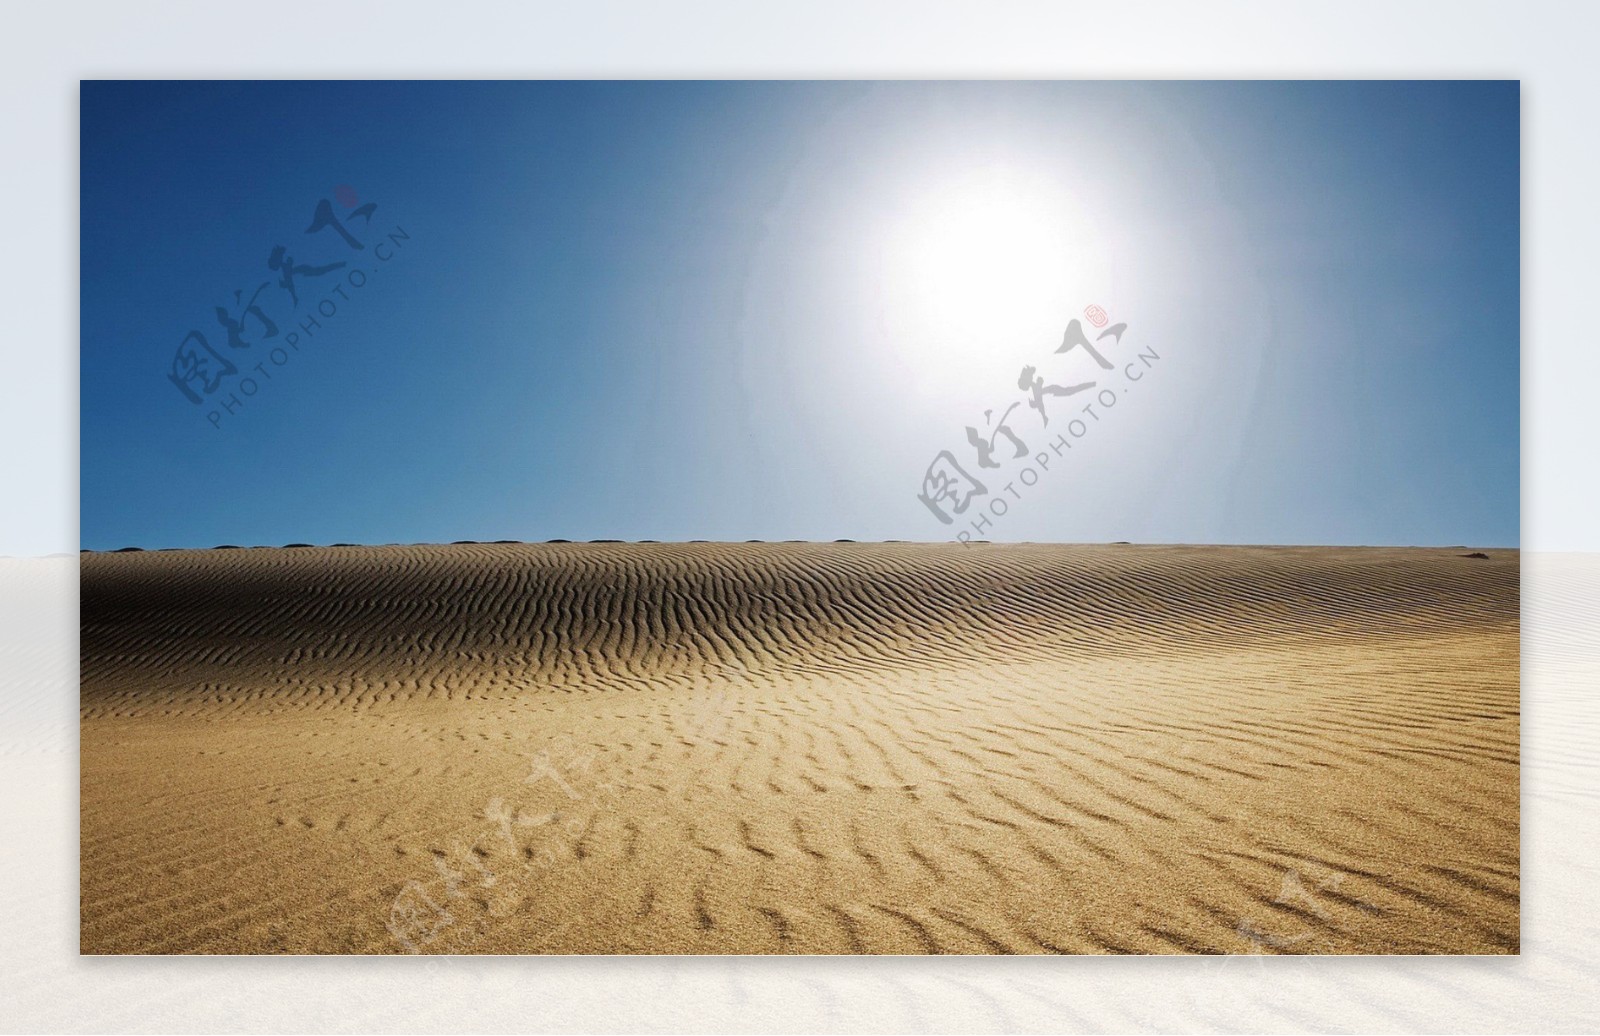 沙漠背景设计素材图片下载桌面壁纸